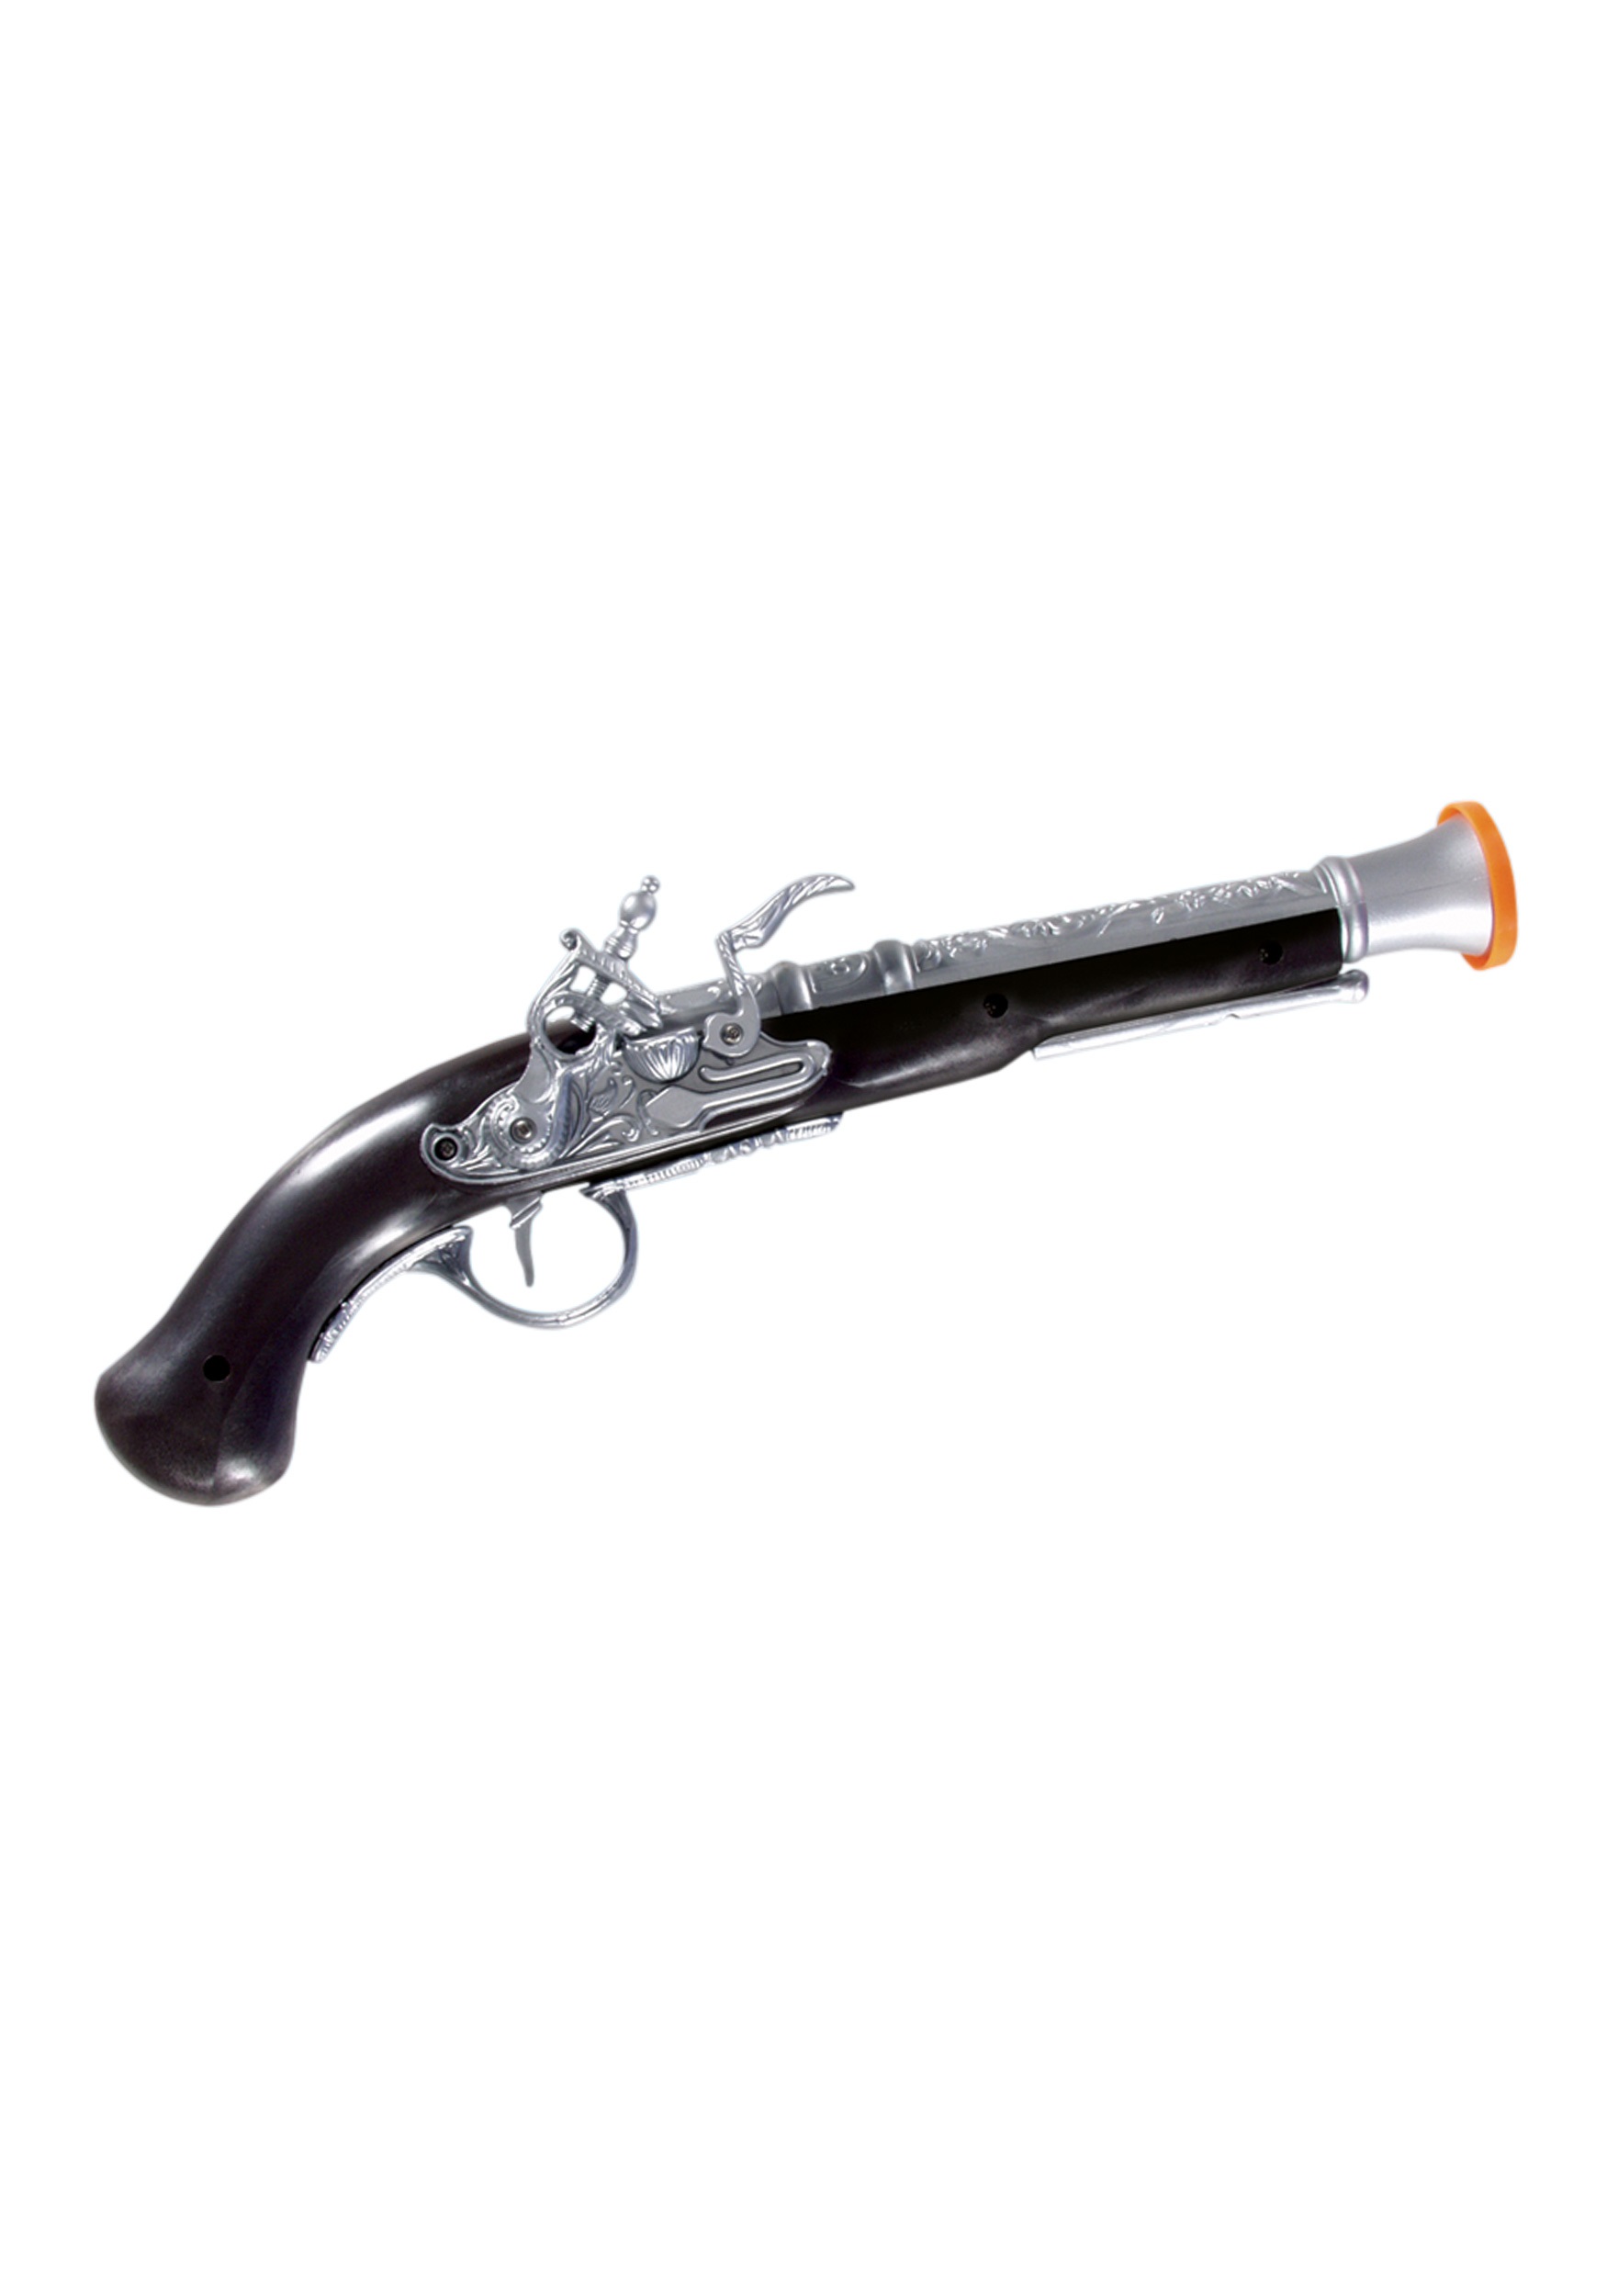 Toy Pirate Gun Parts 117